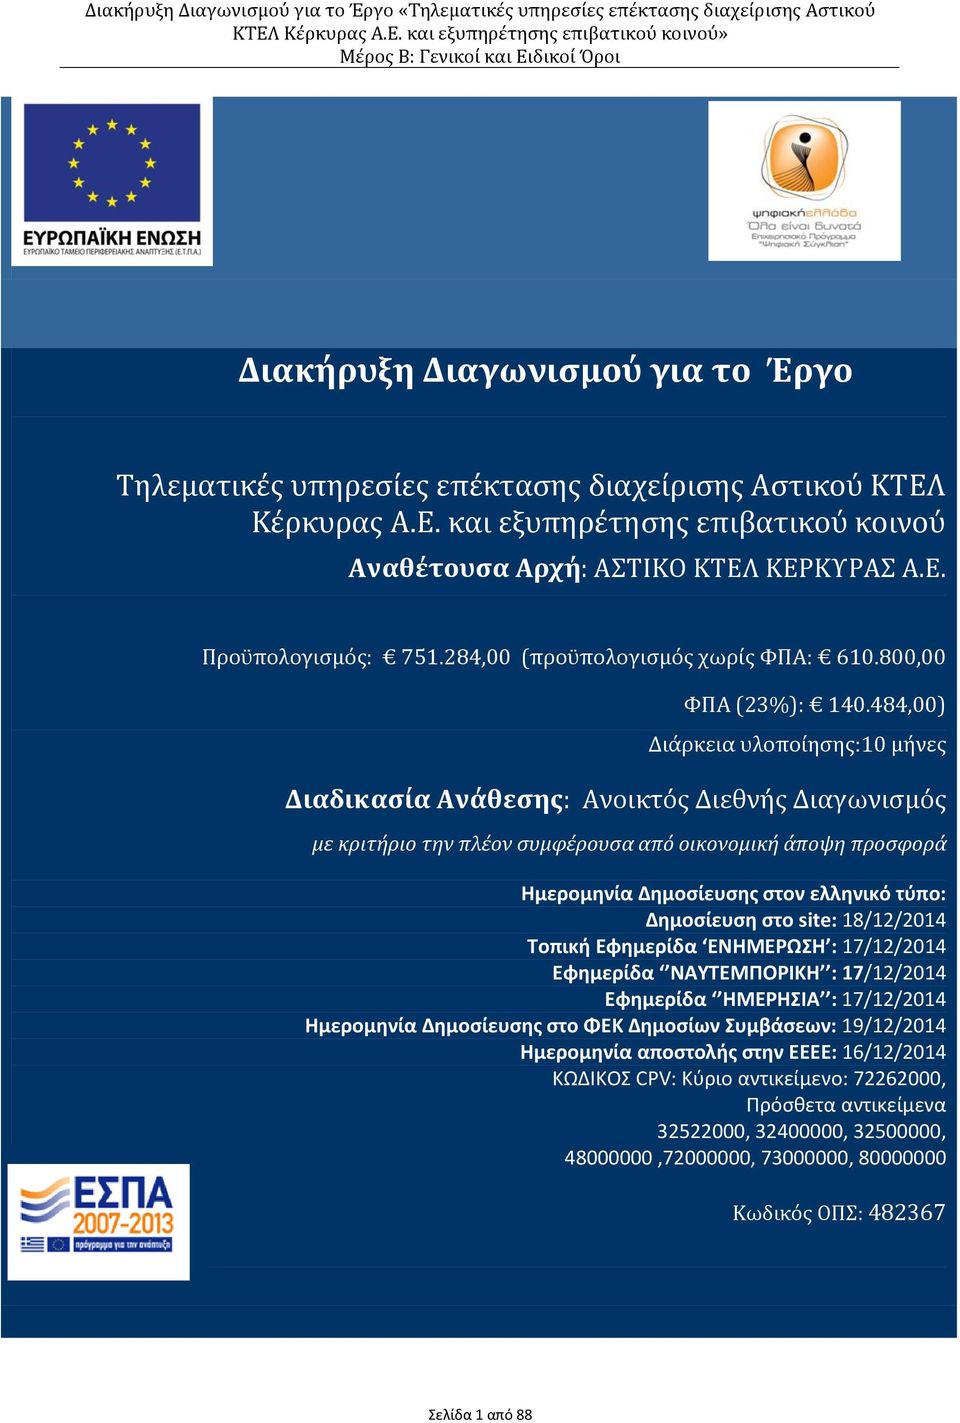 484,00) Διάρκεια υλοποίησης: 10 μήνες Διαδικασία Ανάθεσης: Ανοικτός Διεθνής Διαγωνισμός με κριτήριο την πλέον συμφέρουσα από οικονομική άποψη προσφορά Ημερομηνία Δημοσίευσης στον ελληνικό τύπο: